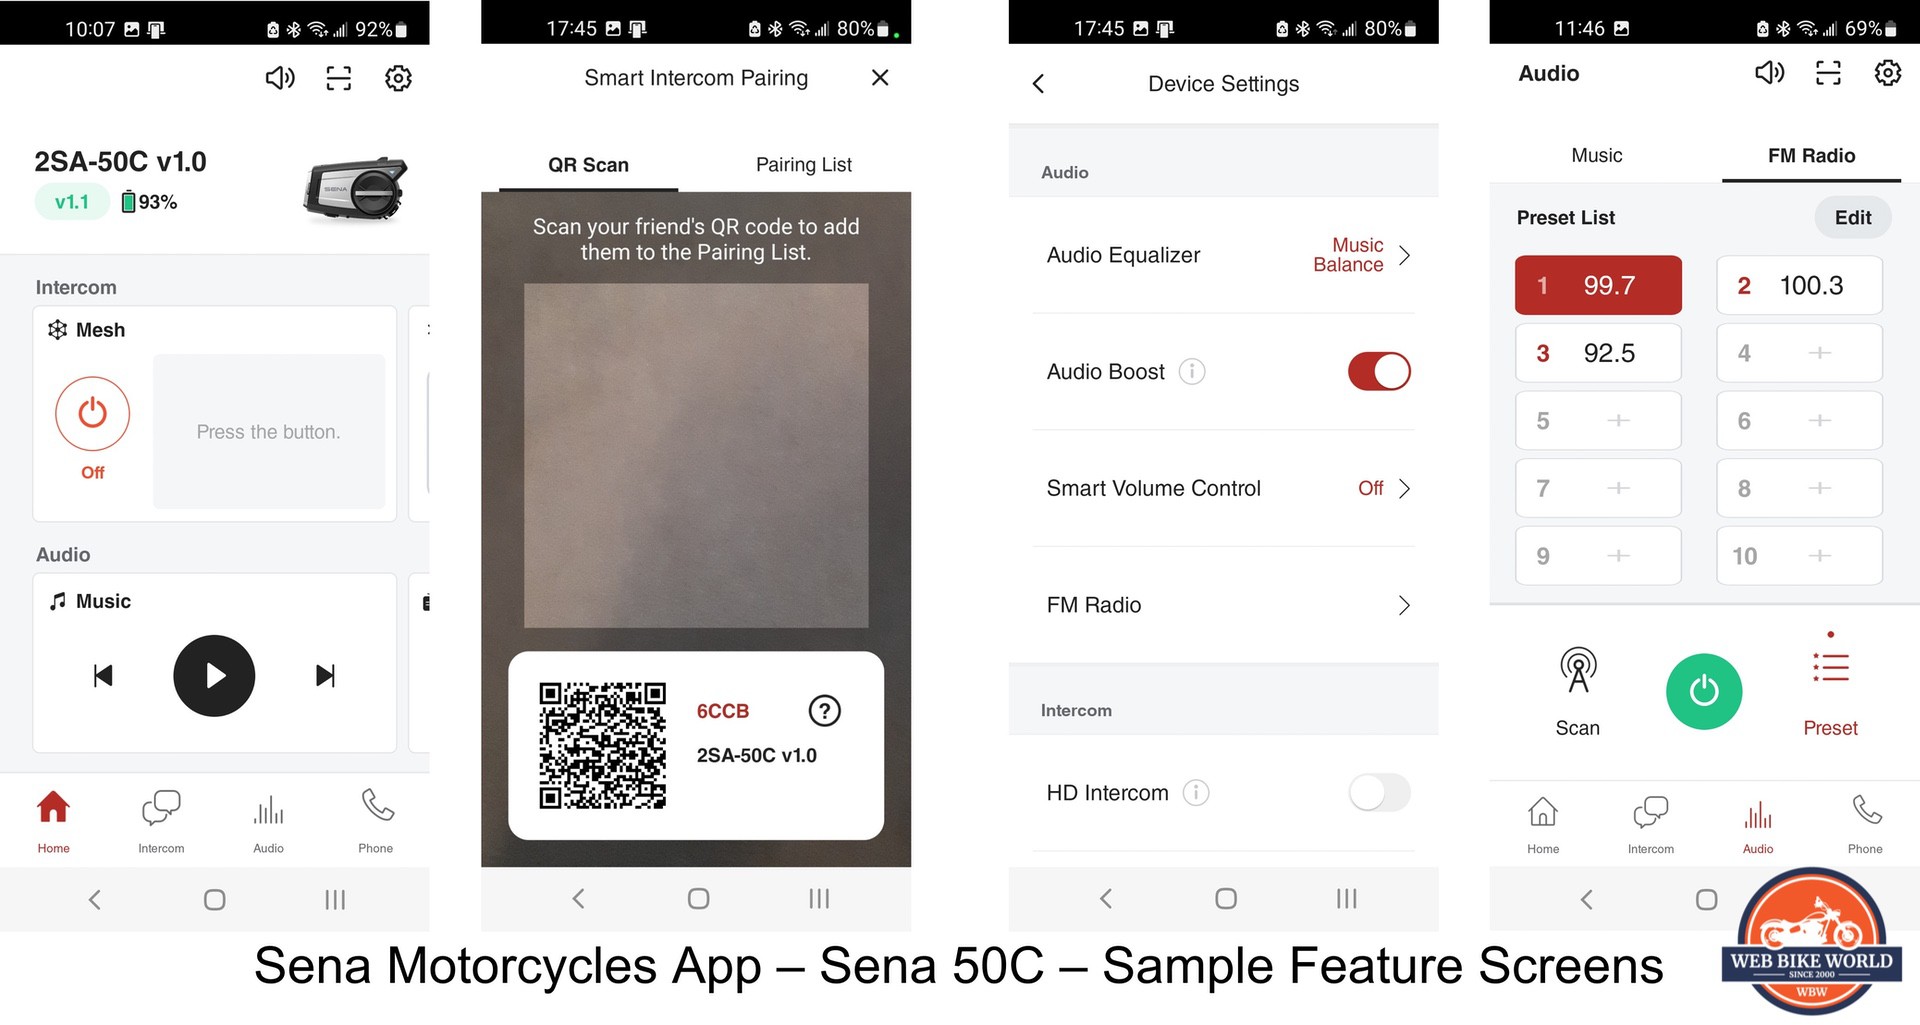 Another screenshot of the Sena App